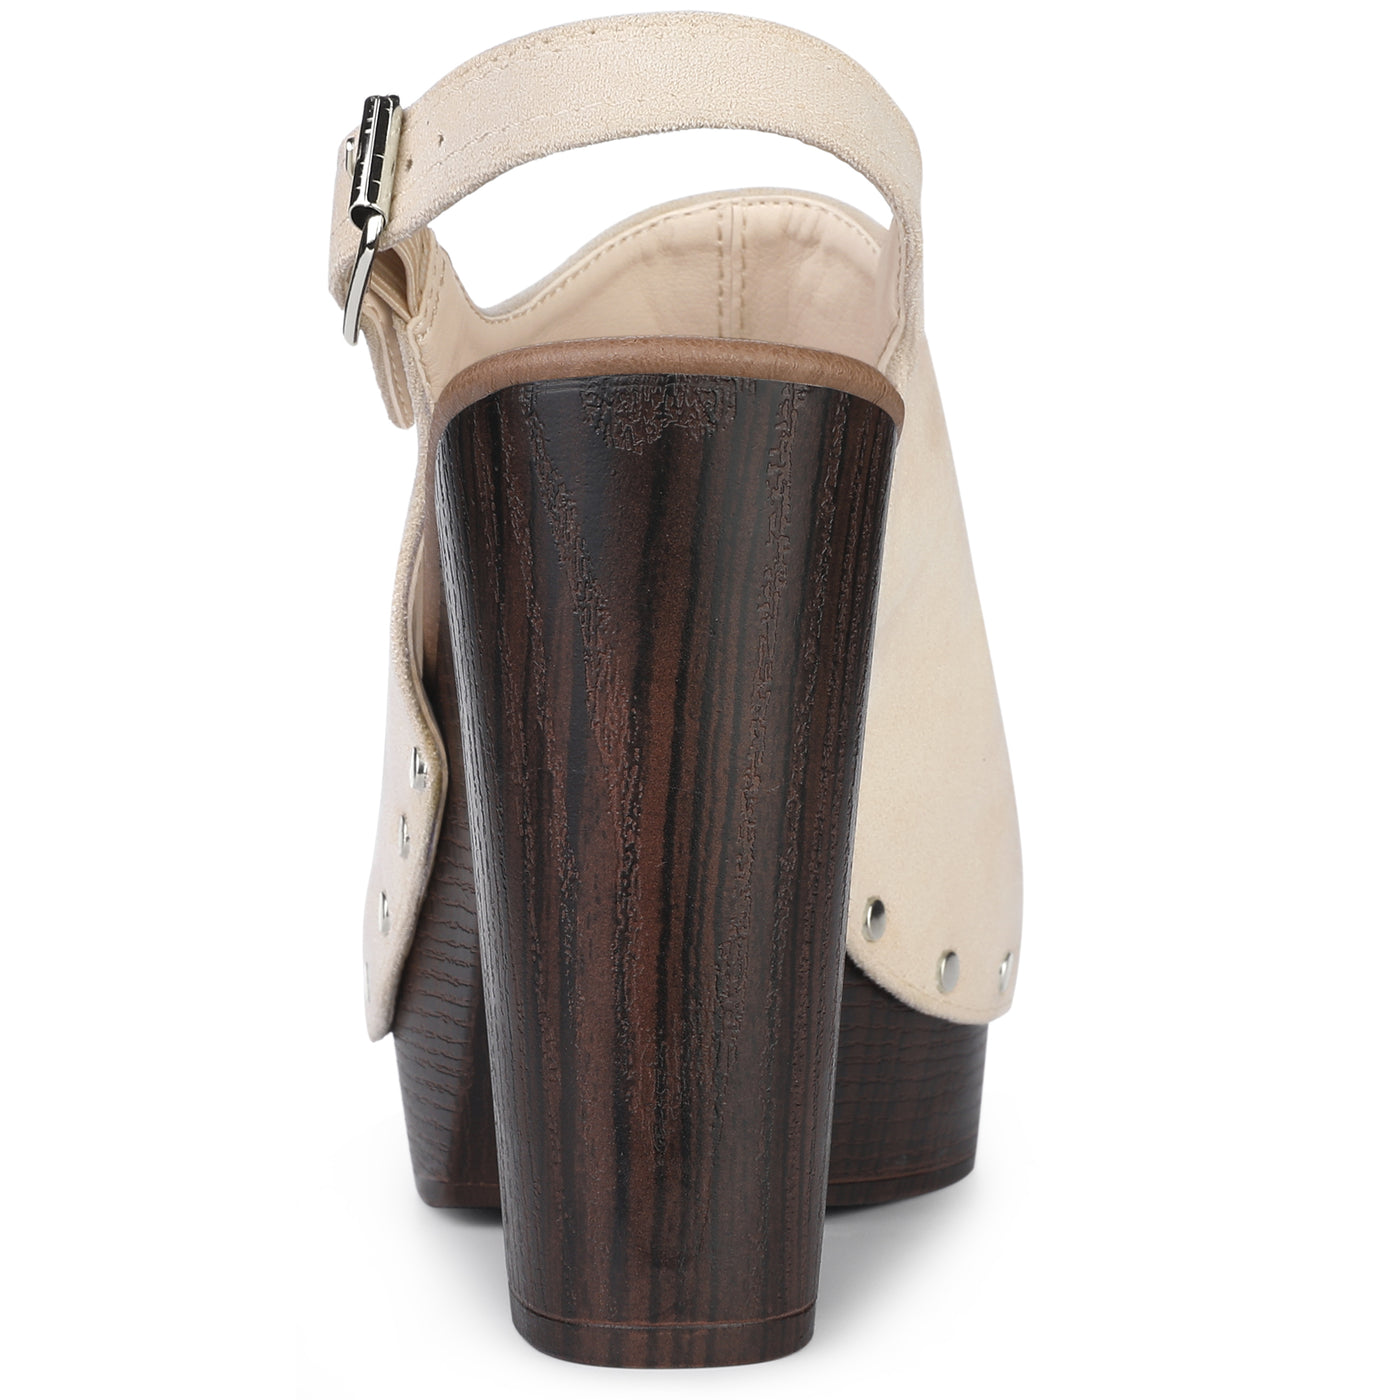 Bublédon Perphy Slingback Platform Chunky High Heel Sandals